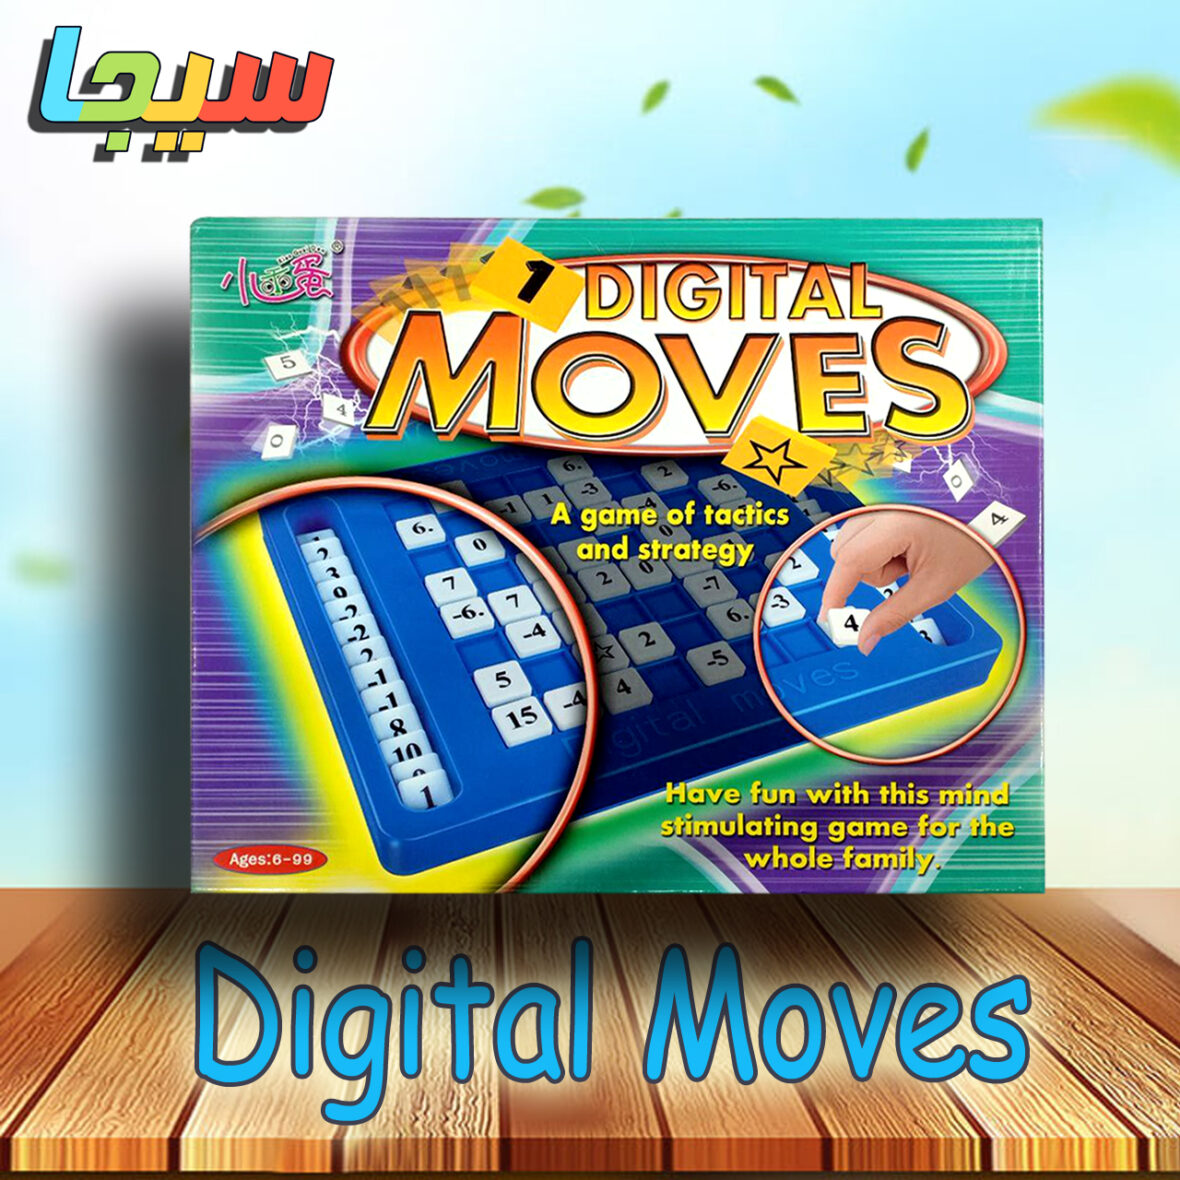 Digital Moves